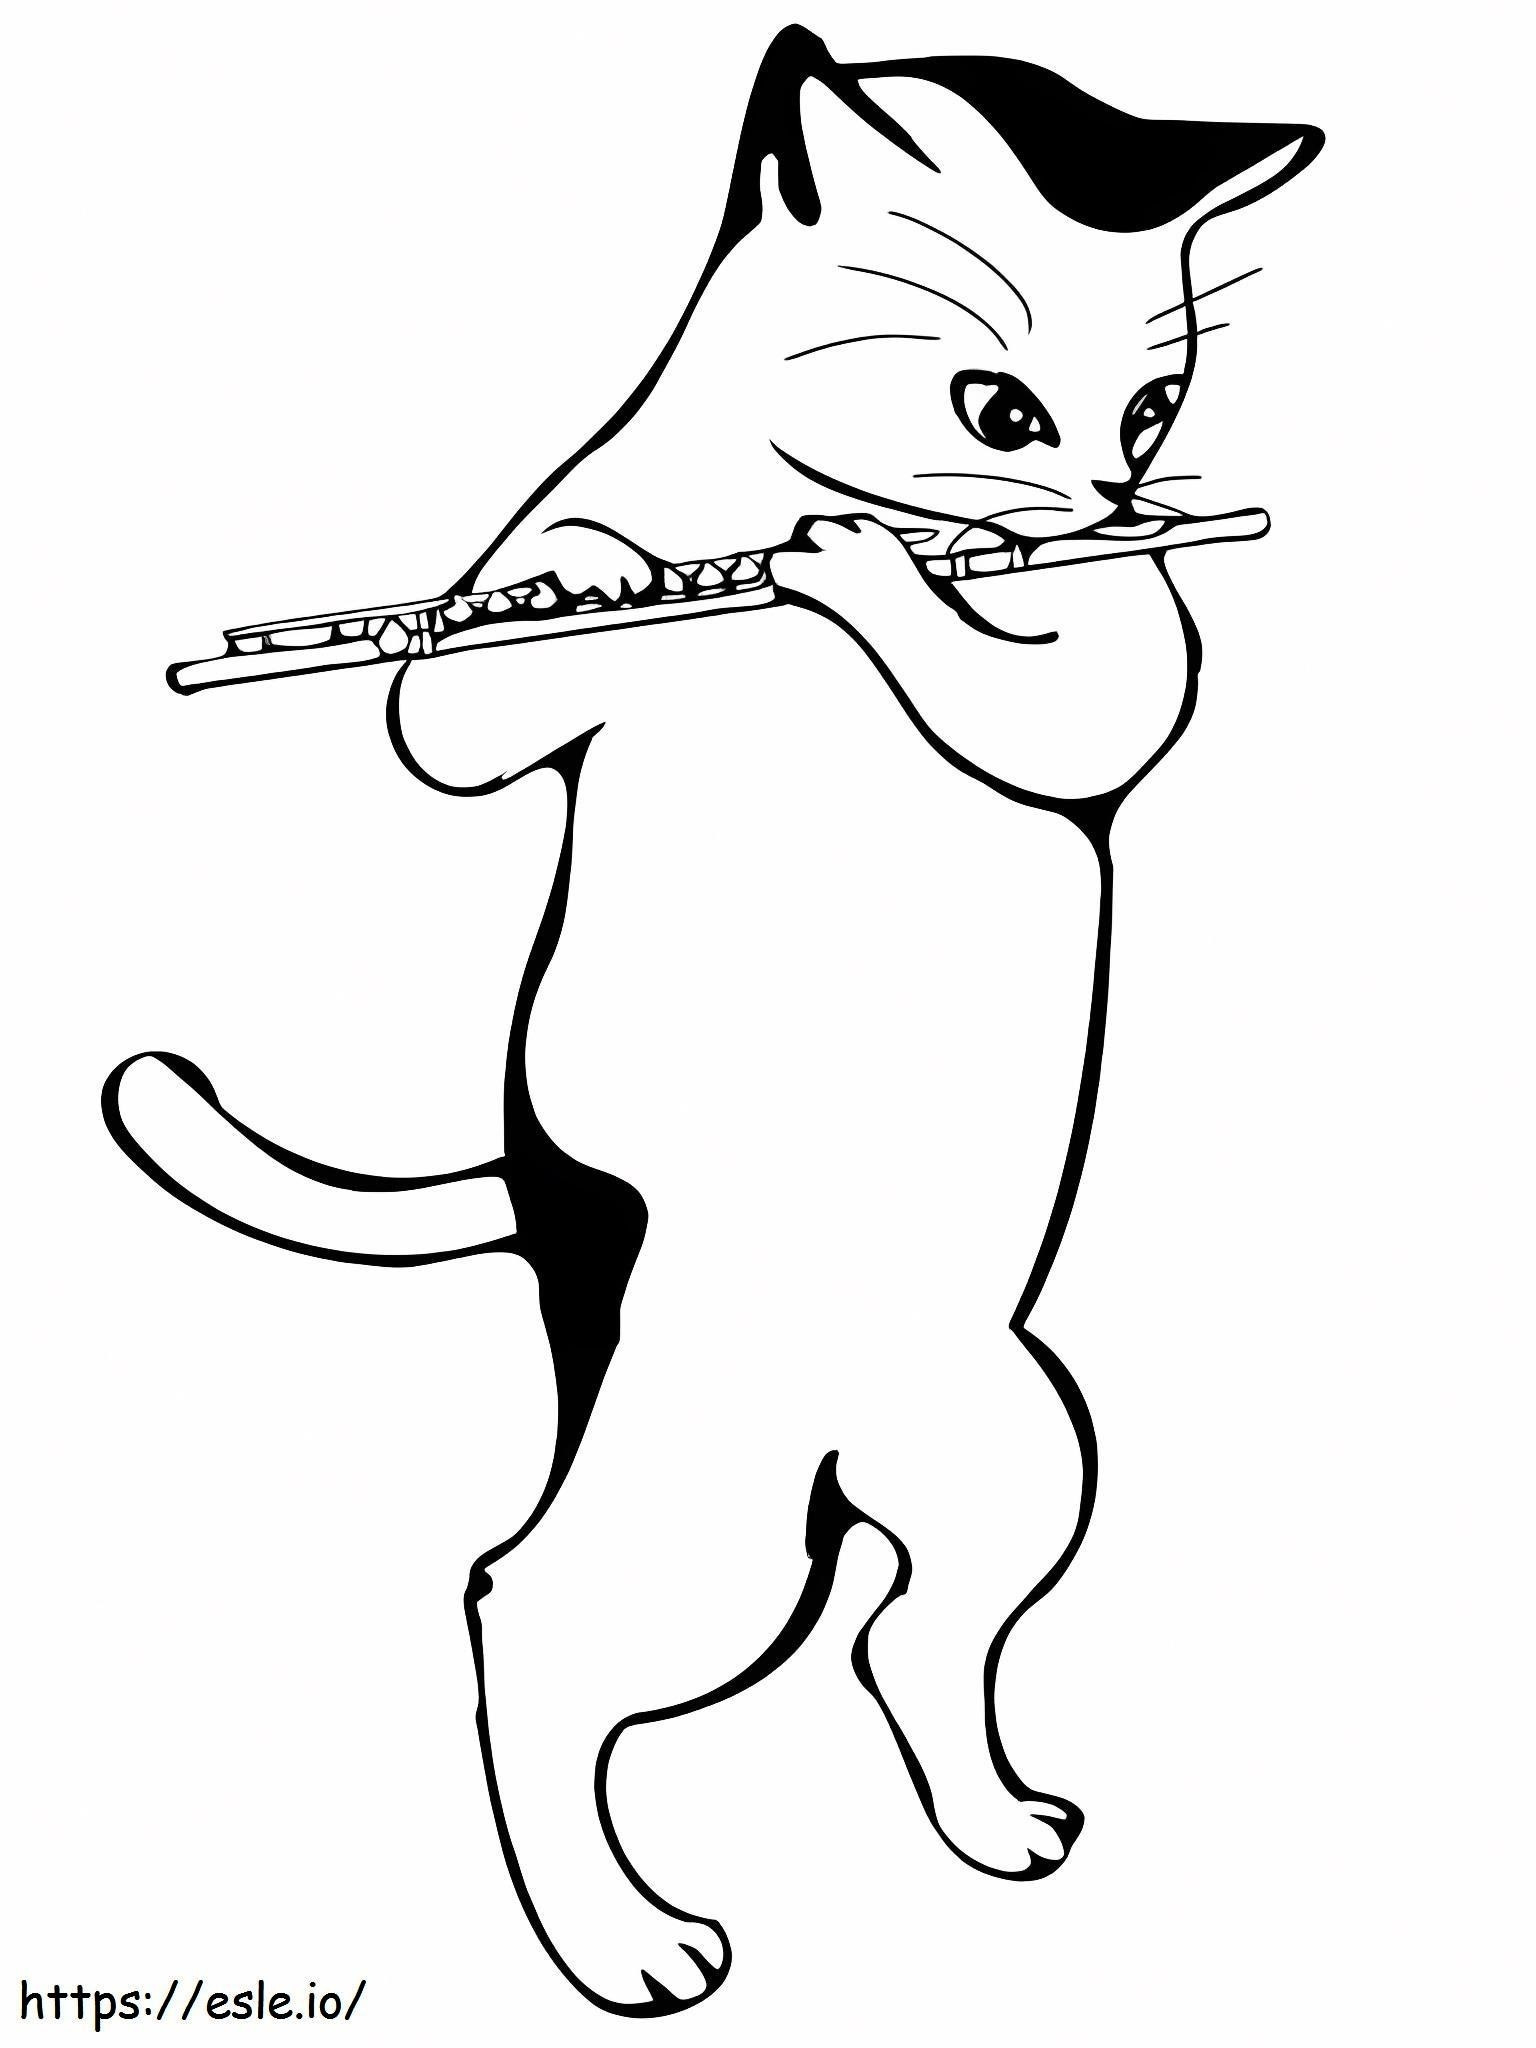 Katze spielt Flöte ausmalbilder